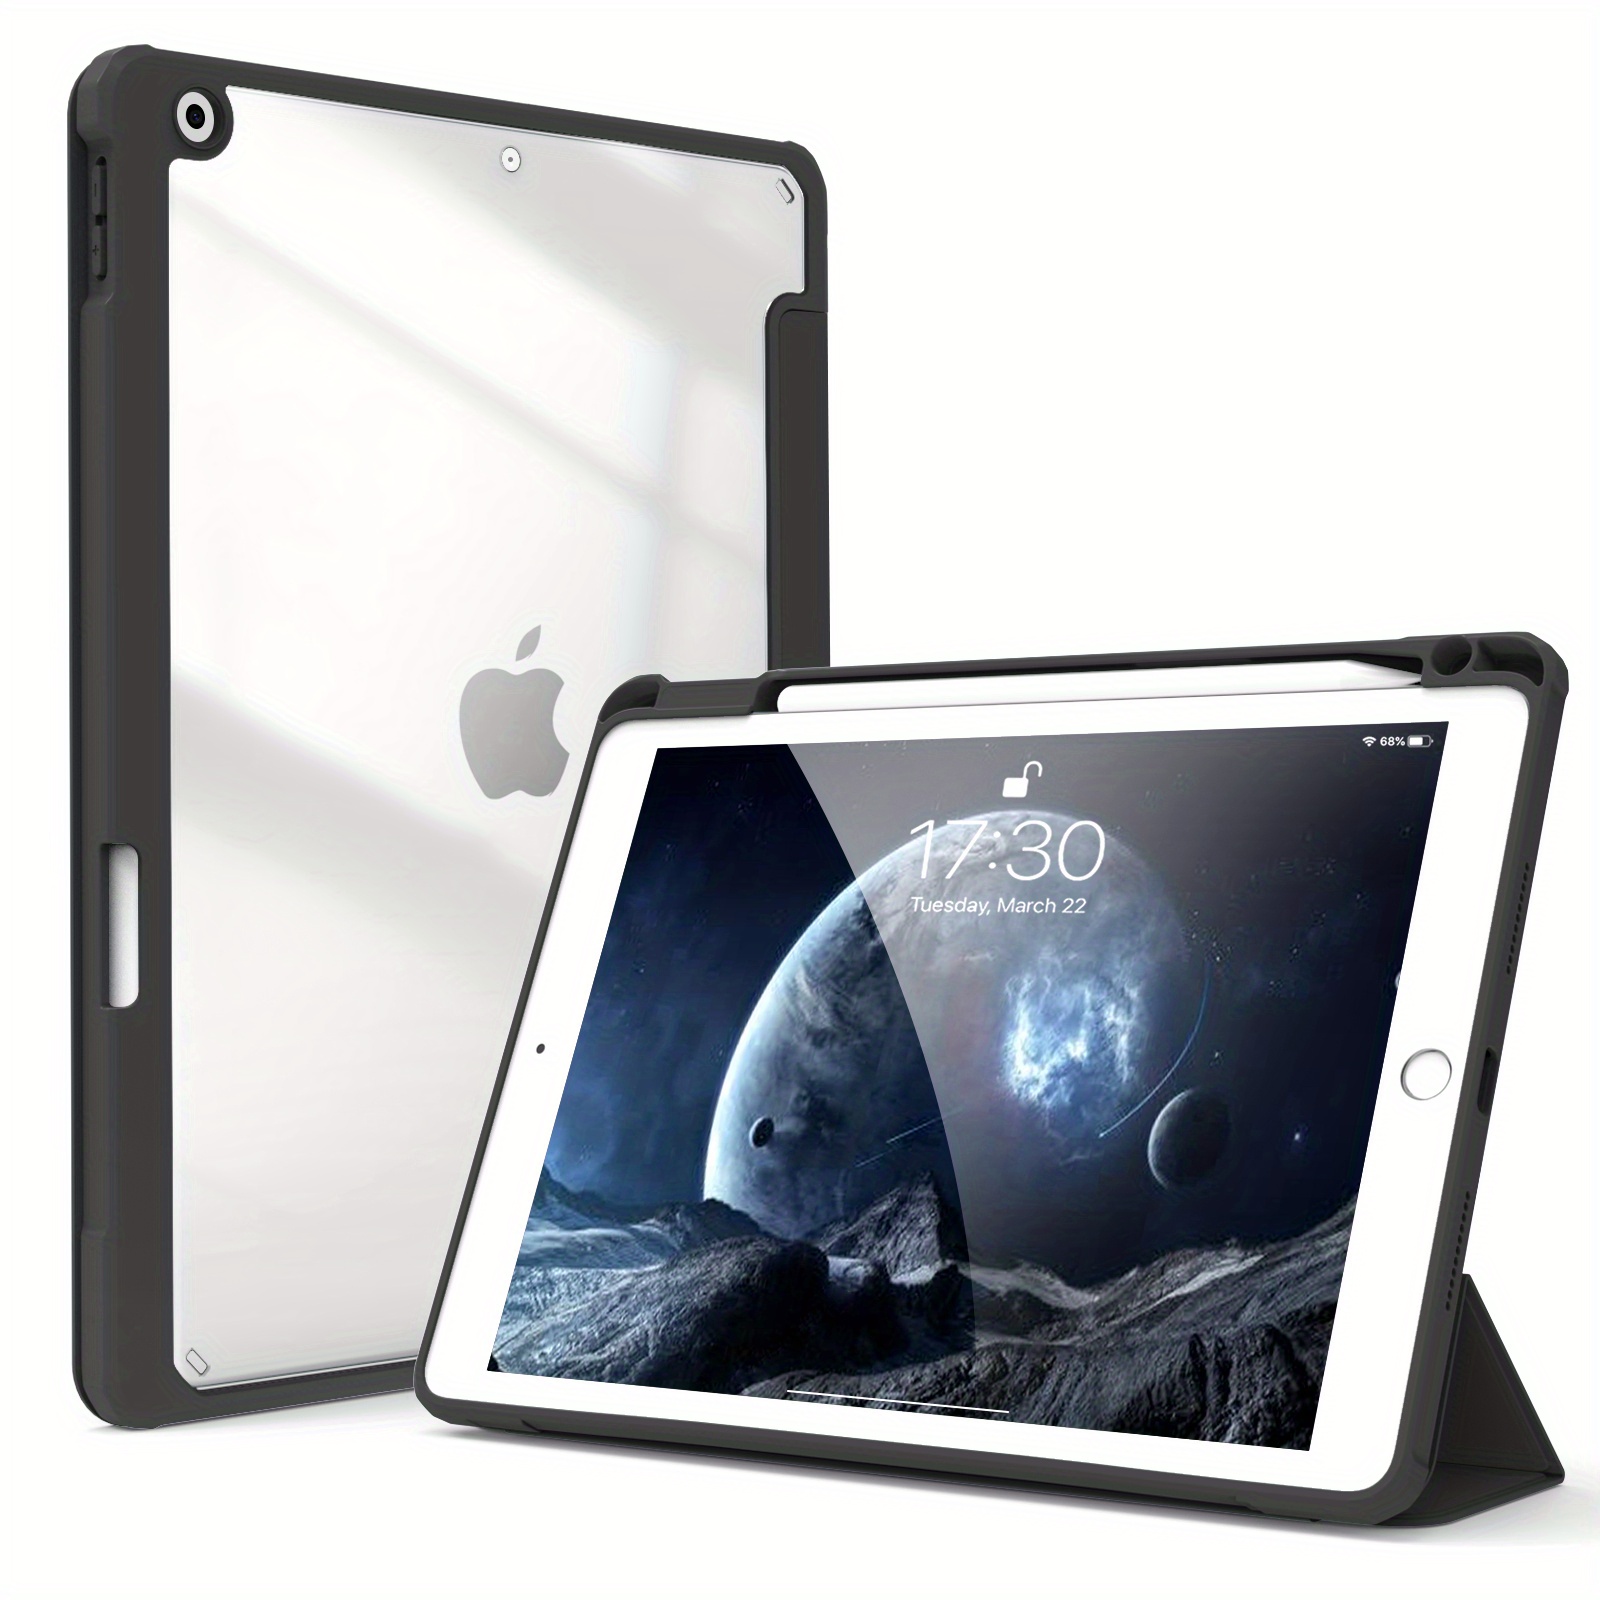 Coque Hybrid Rebound 360 pour iPad Air 5/4 - ESR